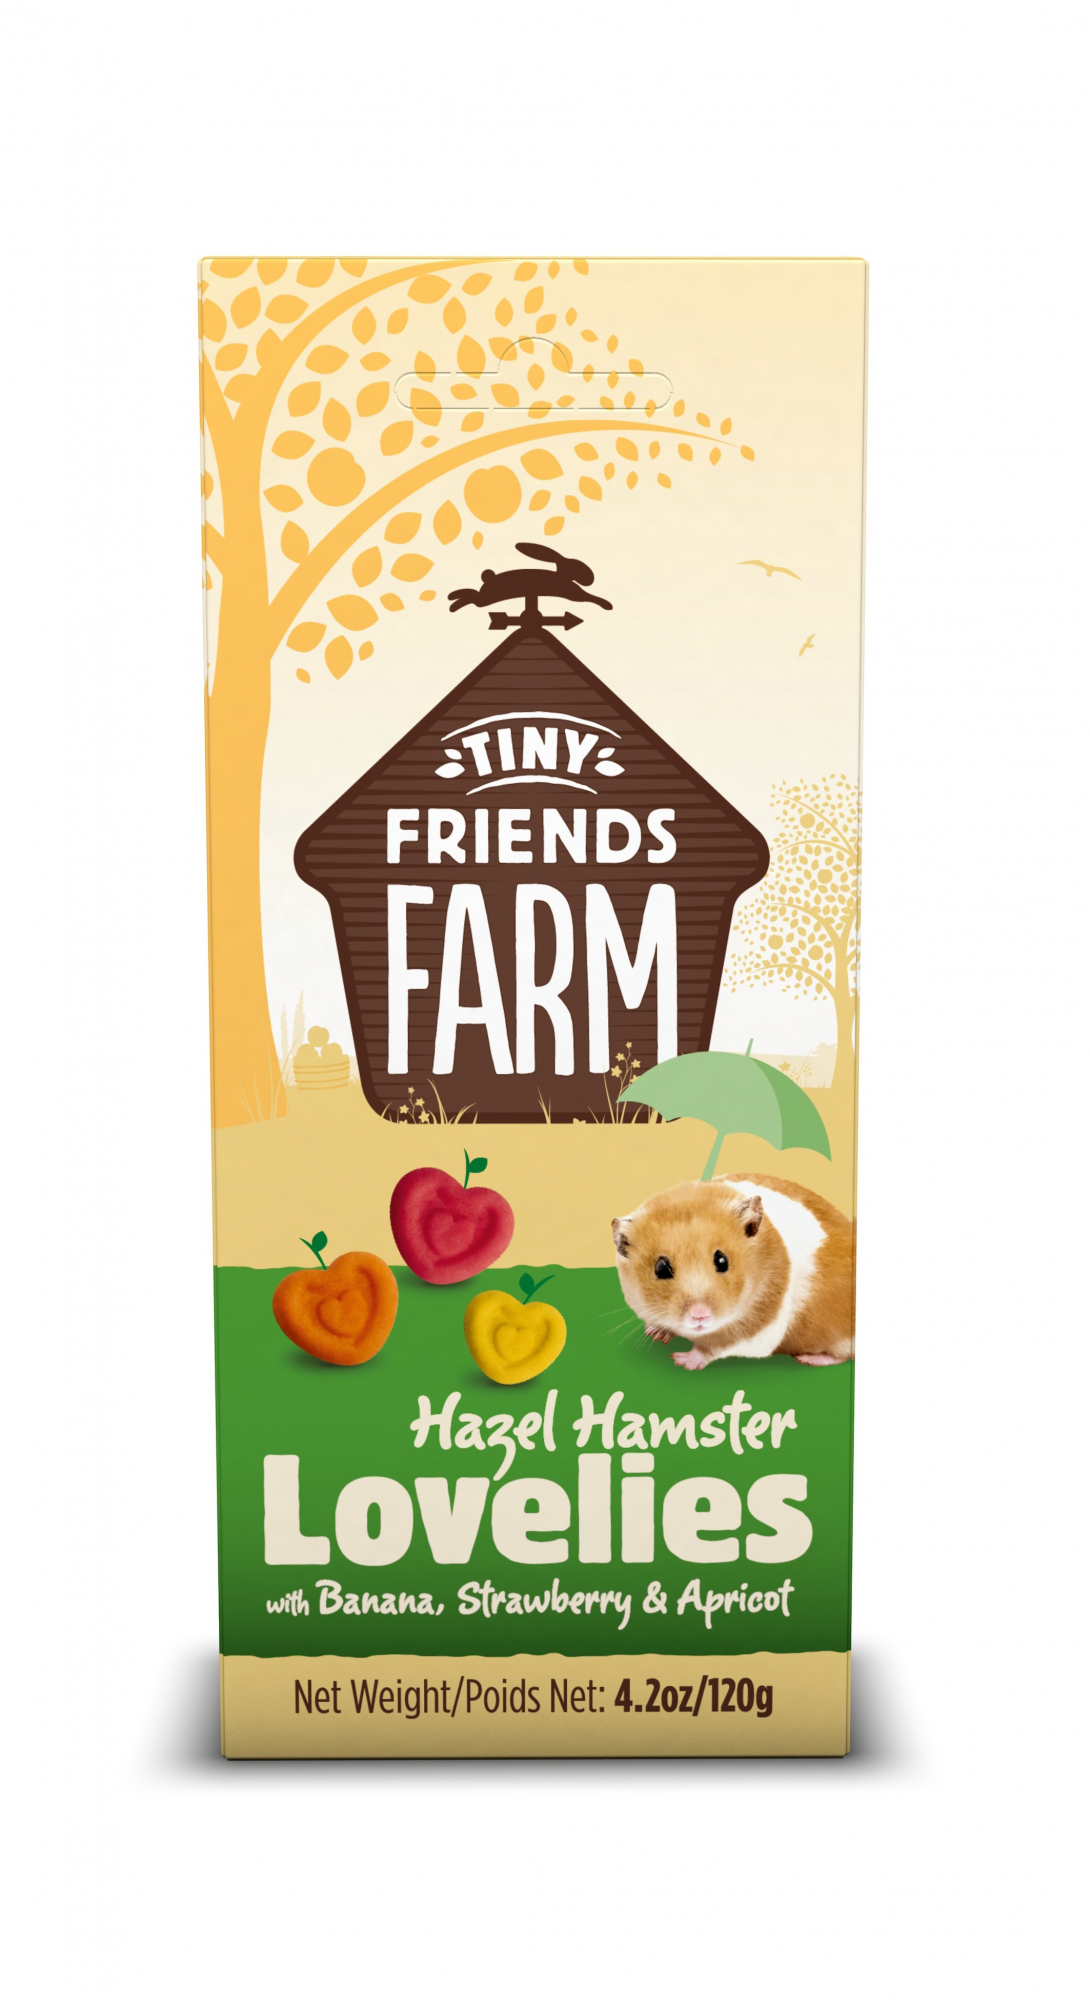 Biscoitos TINY FRIENDS FARM com fruta e legumes para hamster